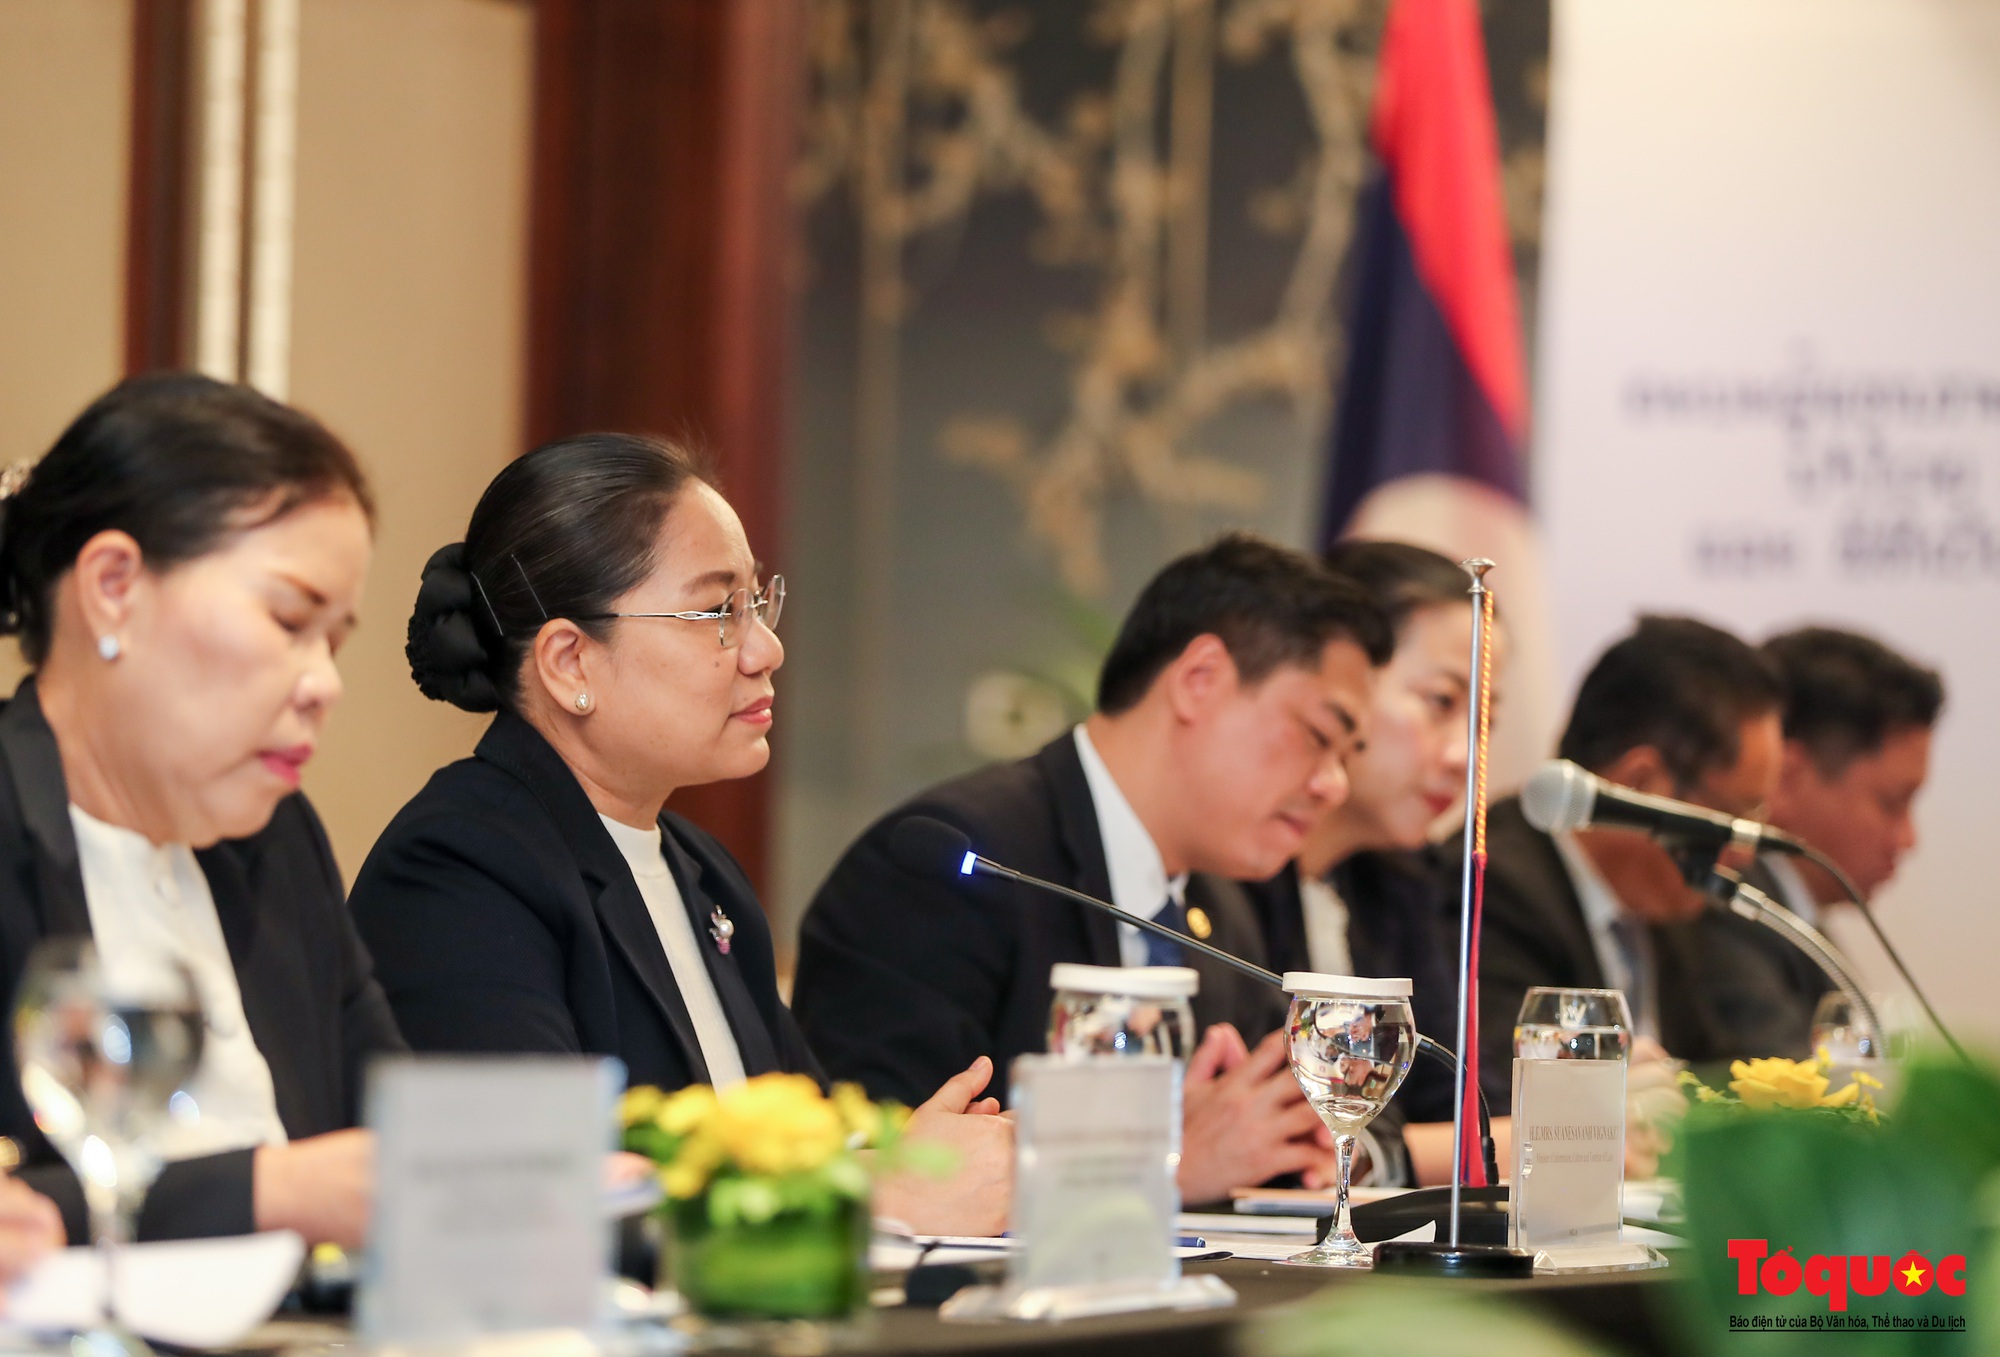 Chùm ảnh: Bộ trưởng Bộ VHTTDL Việt Nam hội đàm với Bộ Thông tin, Văn hóa và Du lịch Lào  - Ảnh 5.